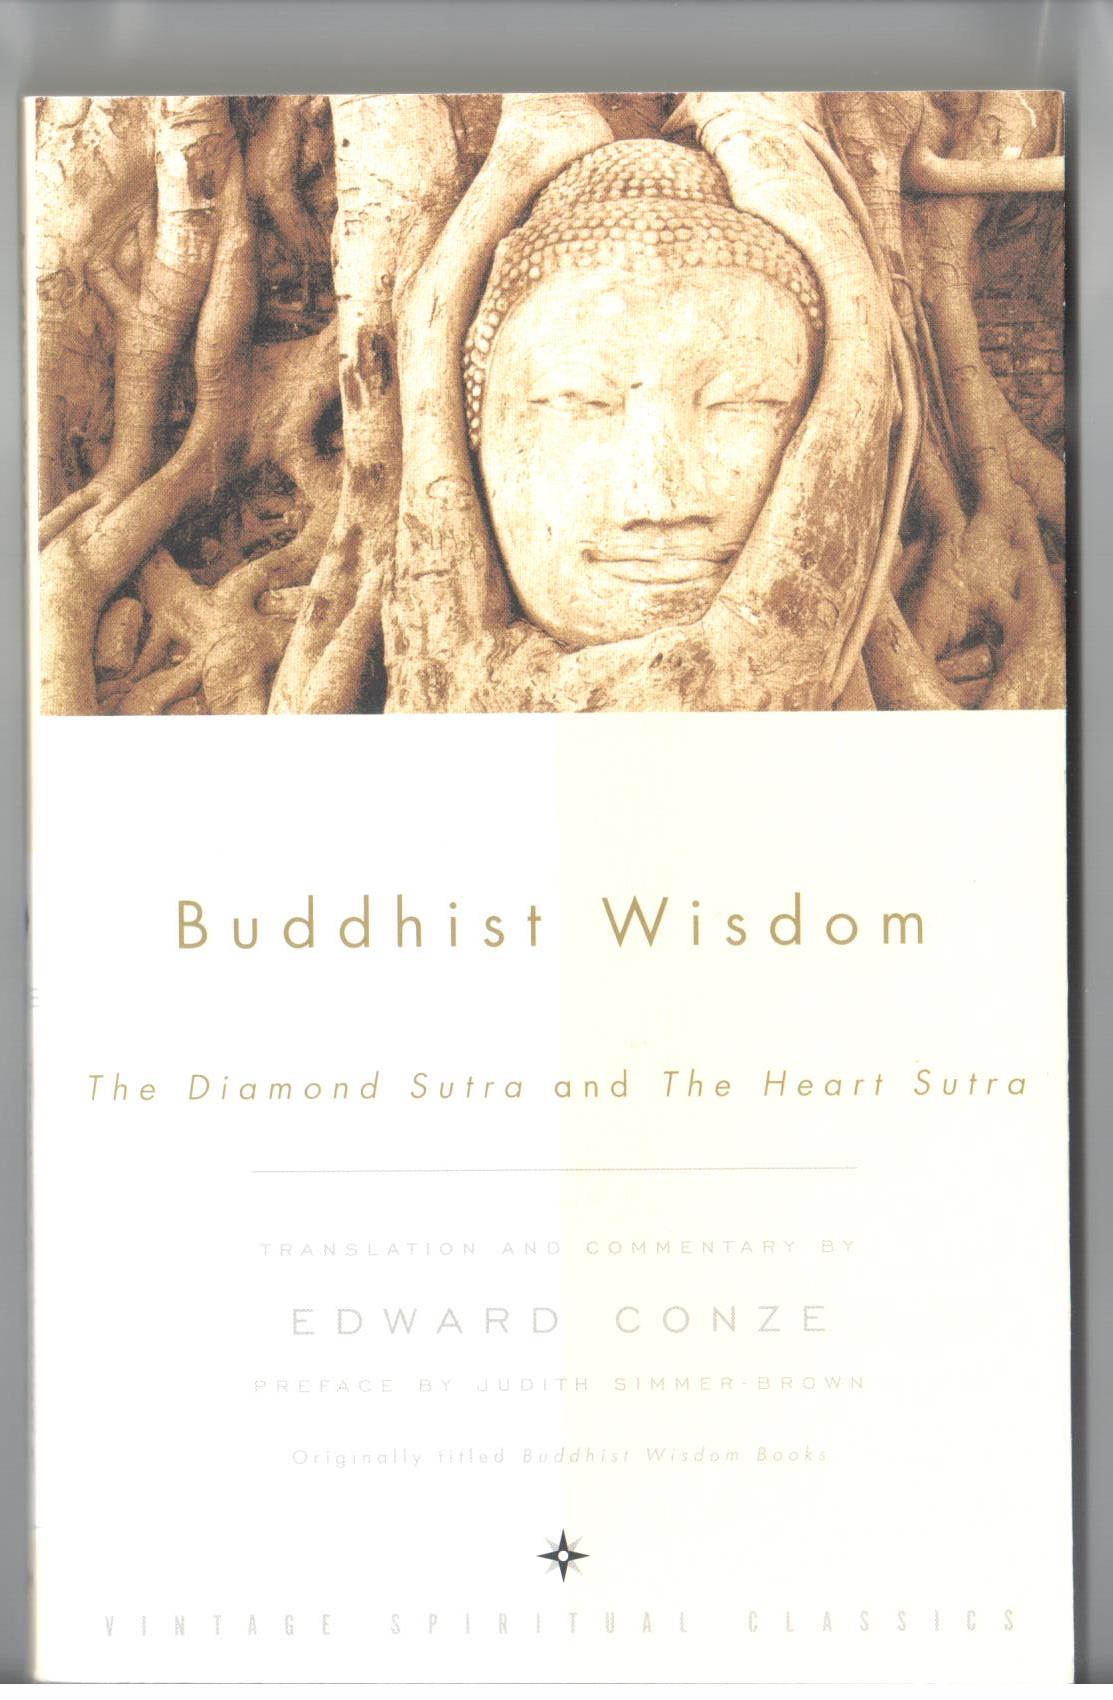 콘츠는 'Buddhist Wisdom'이라는 제목으로 <금강경>과 <반야심경>을
영어로 옮겼다.